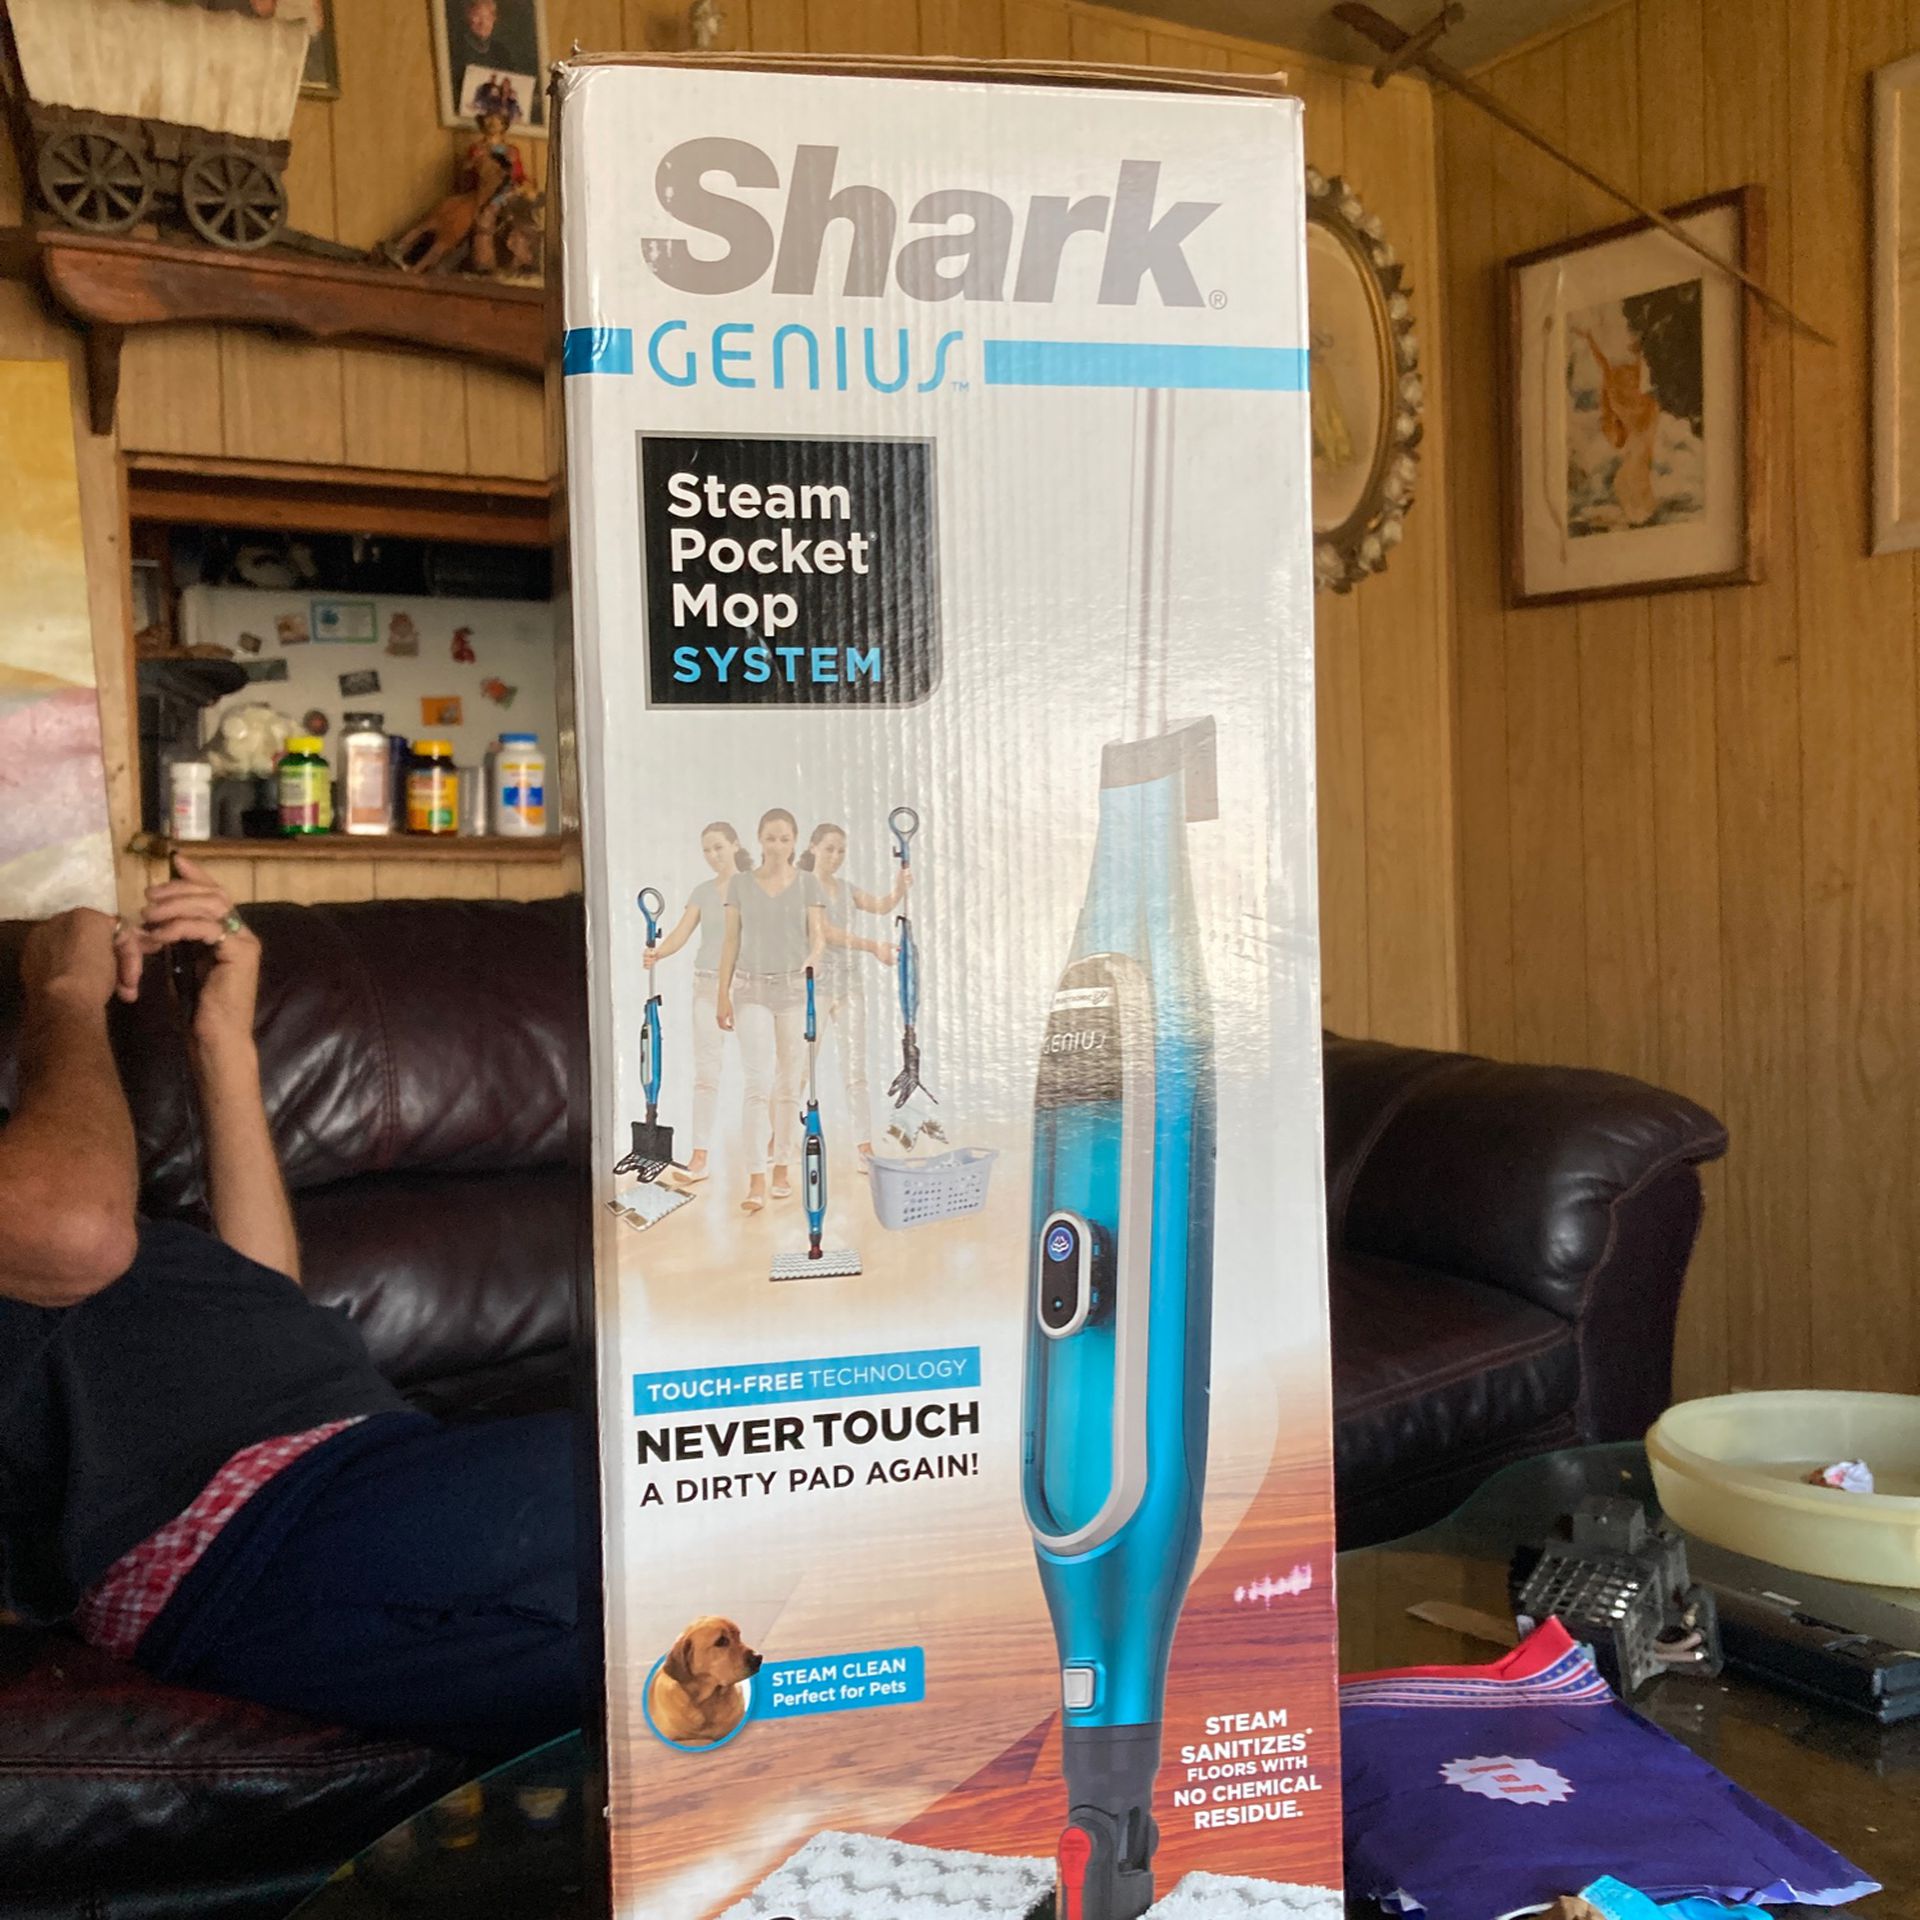 Shark Genius Steam Pocket Mop System